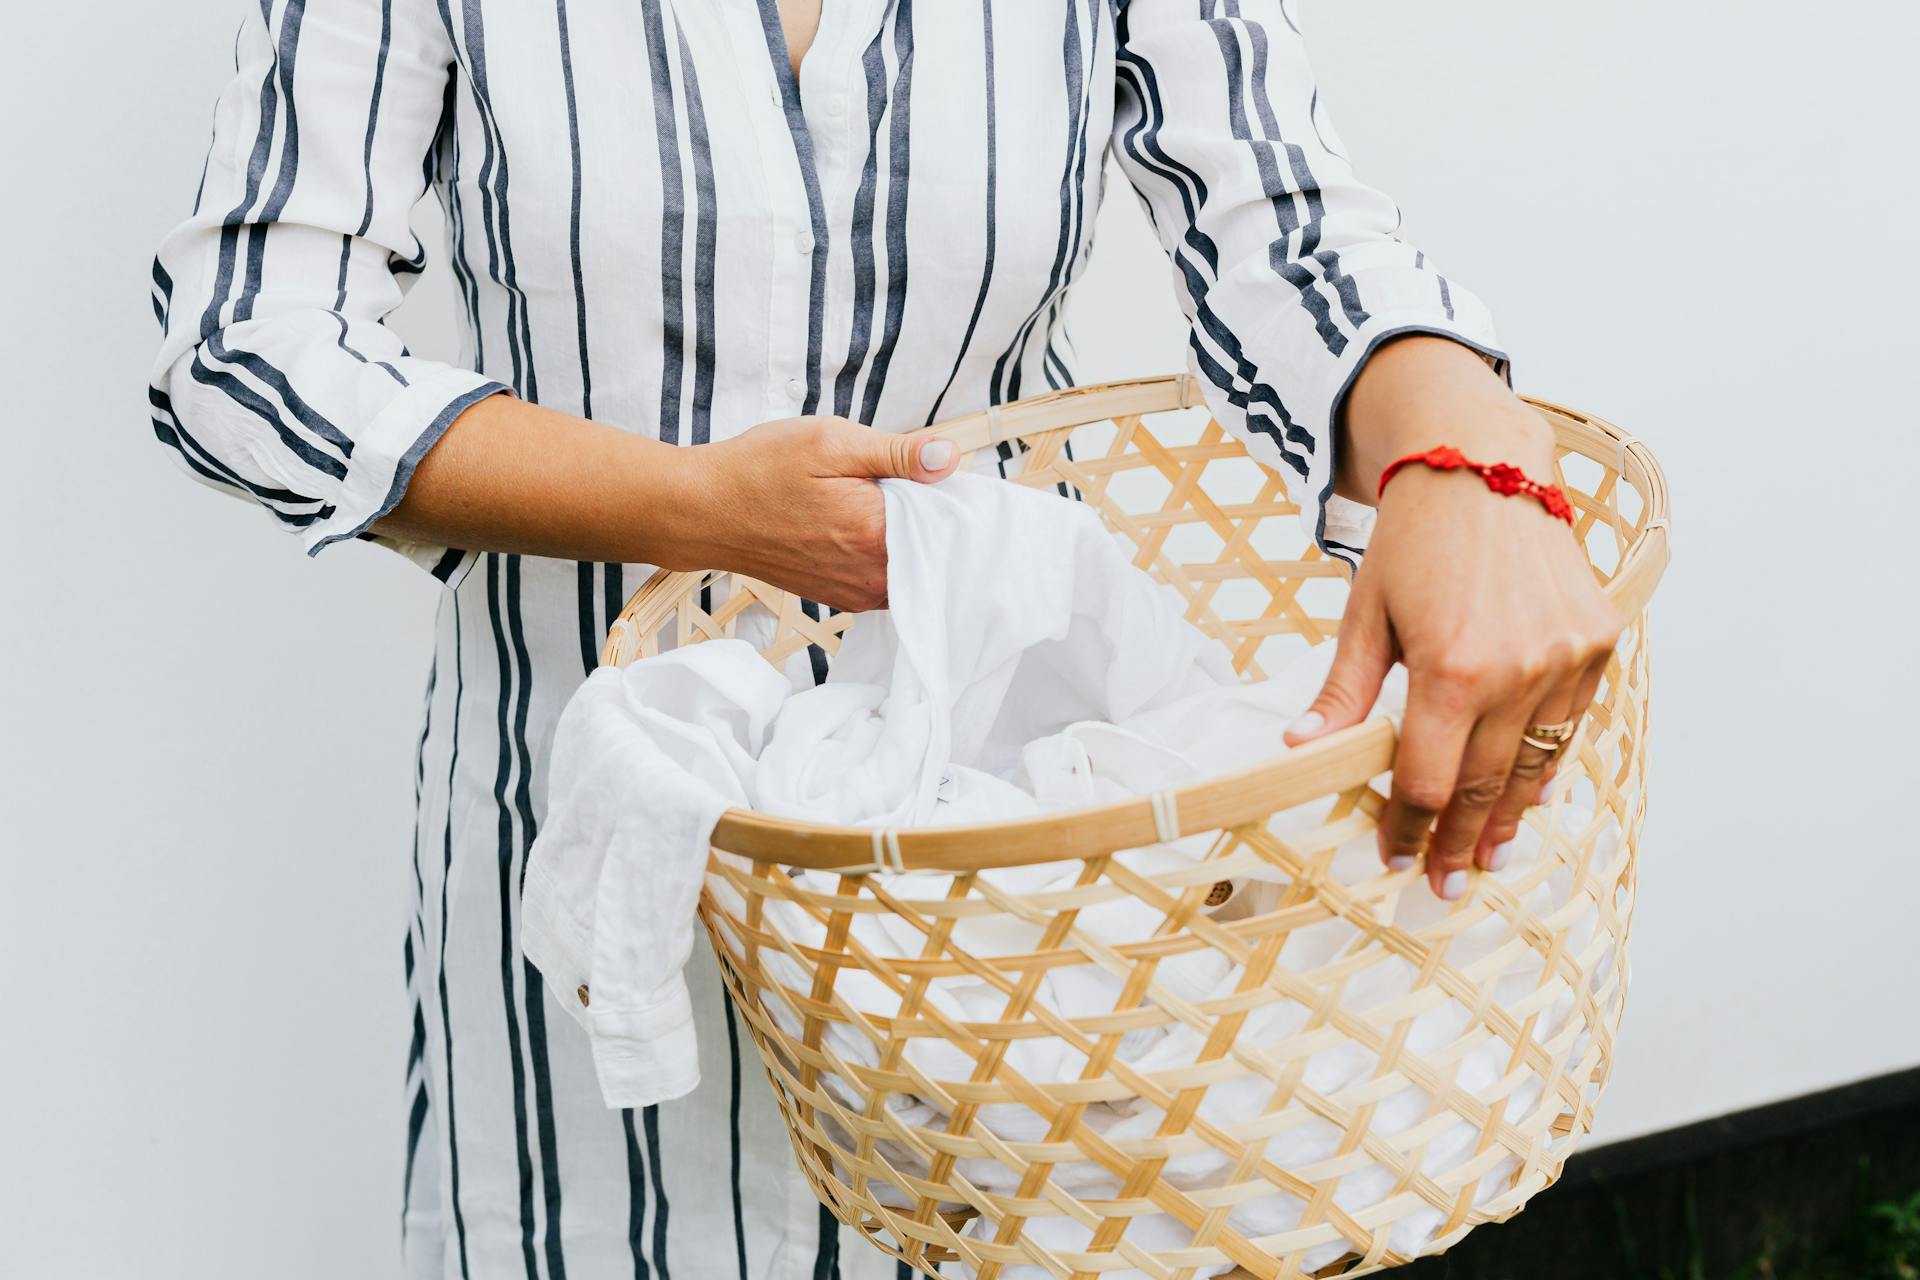 Eine Person hält einen Wäschekorb | Quelle: Pexels